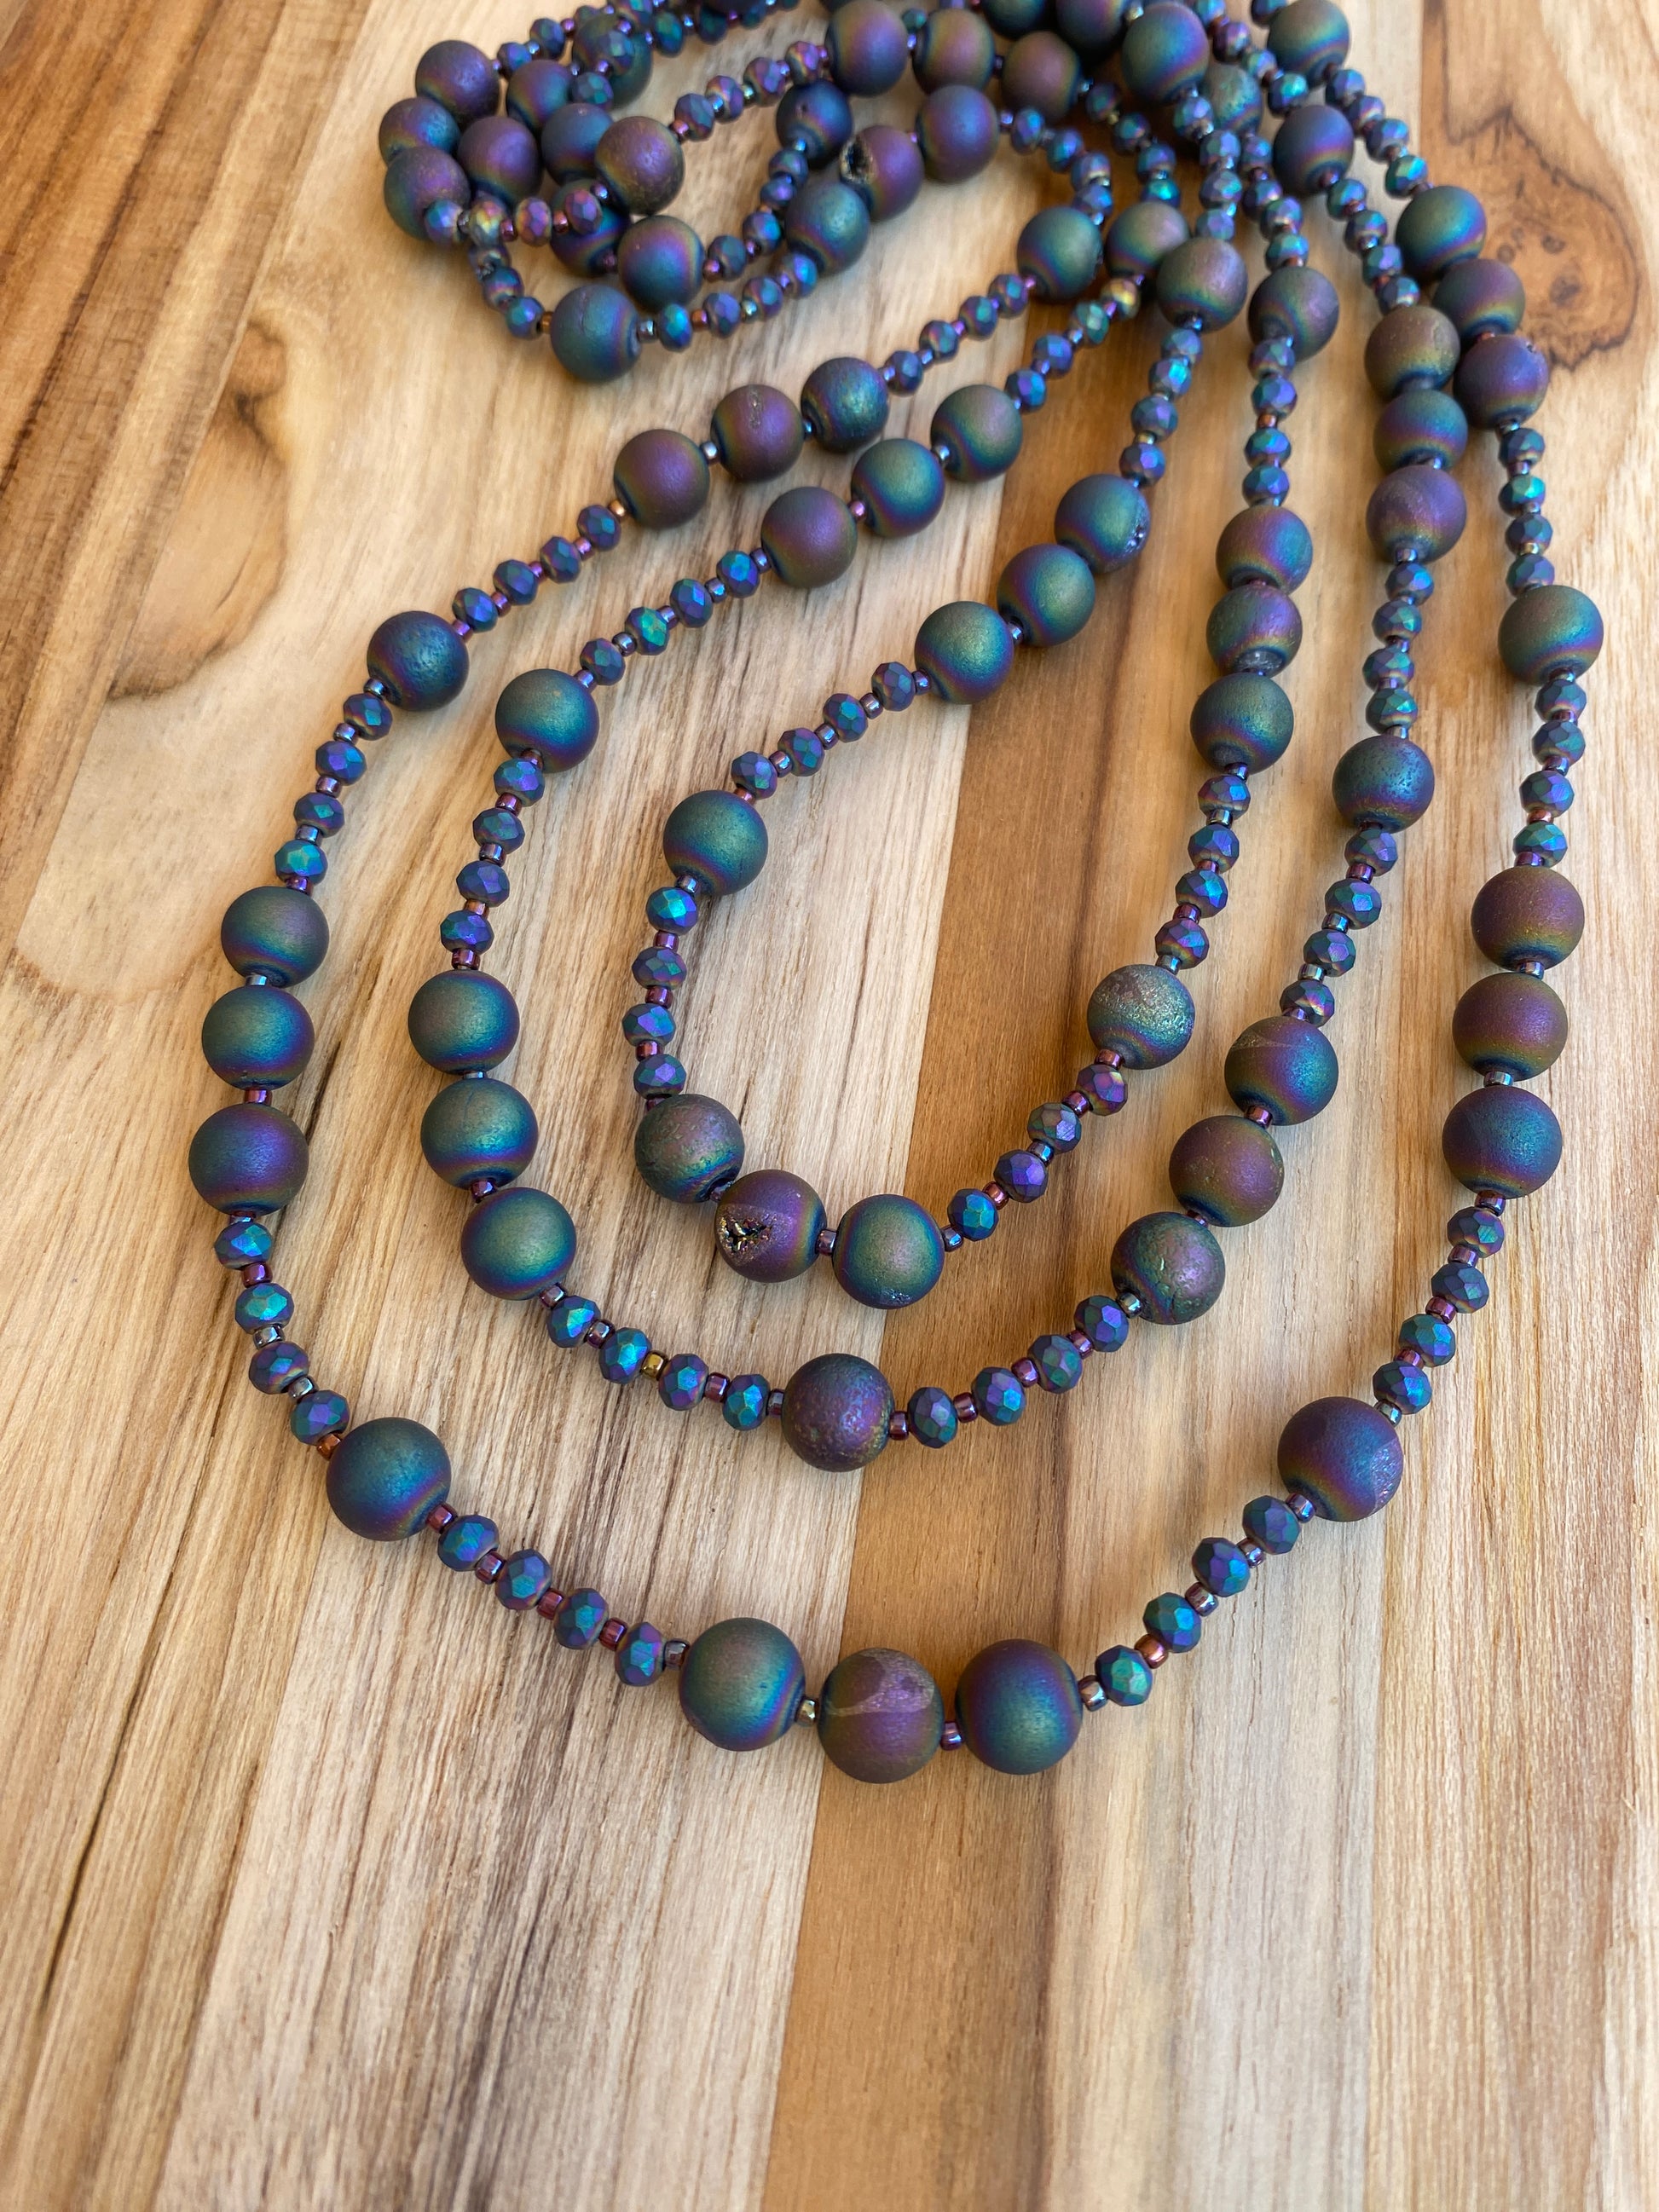 60" Extra Long Wraparound Style Rainbow Druzy Agate Beaded Necklace - My Urban Gems